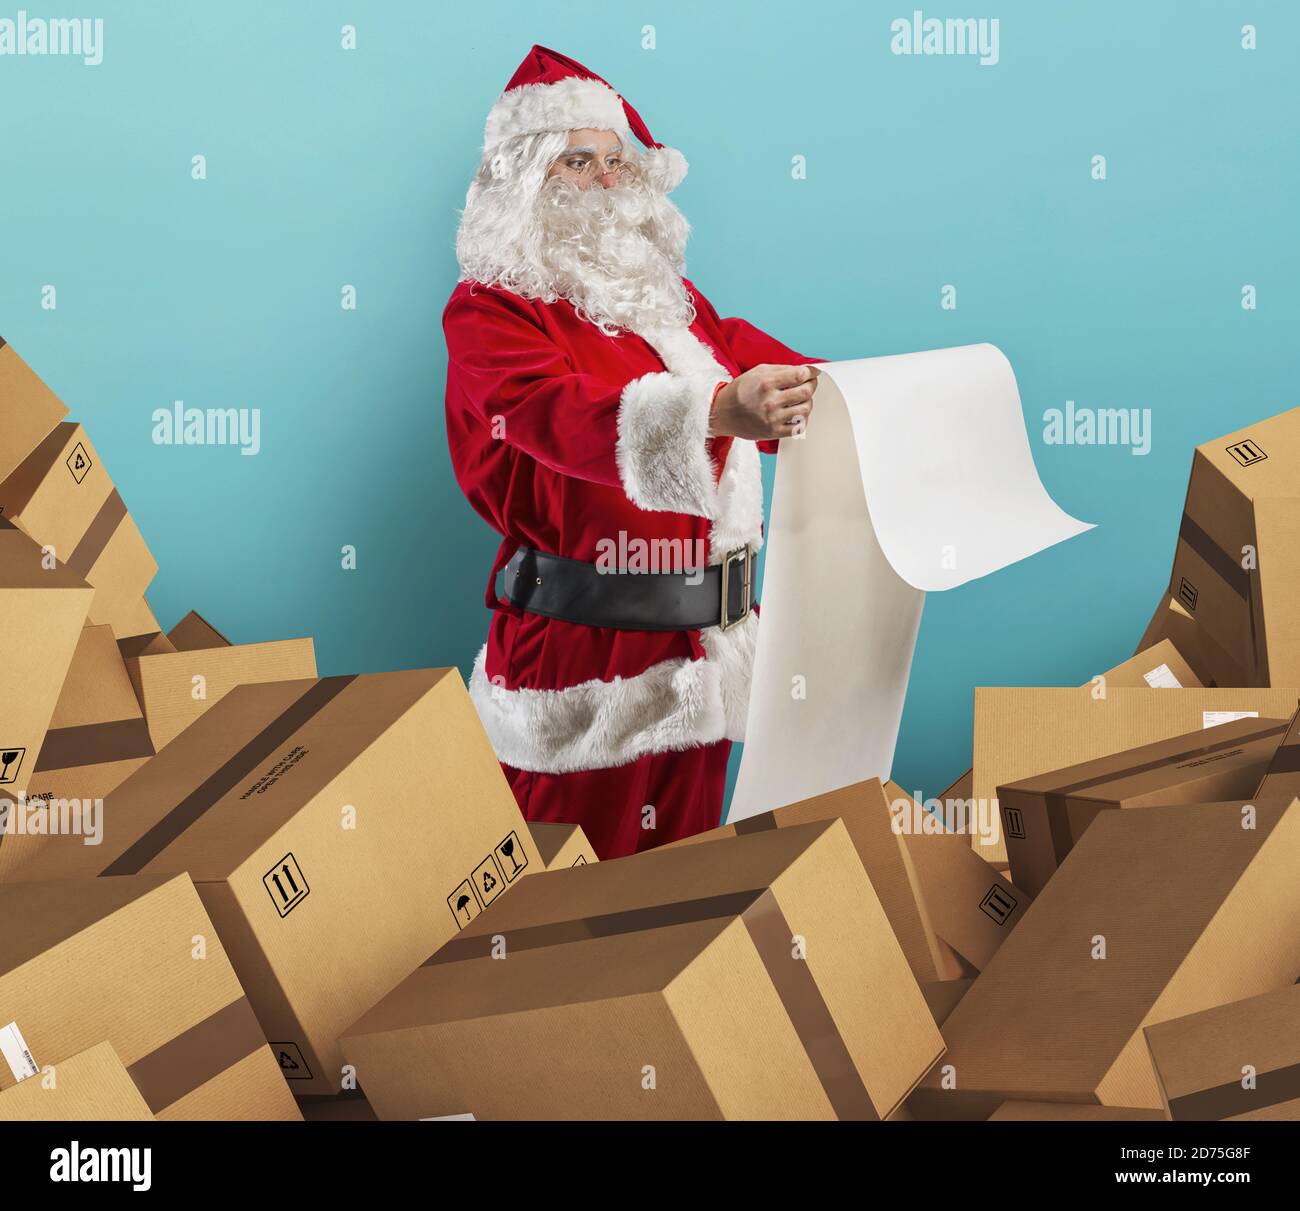 Santa Claus está lleno de solicitudes de regalos y cajas para entrega Foto de stock